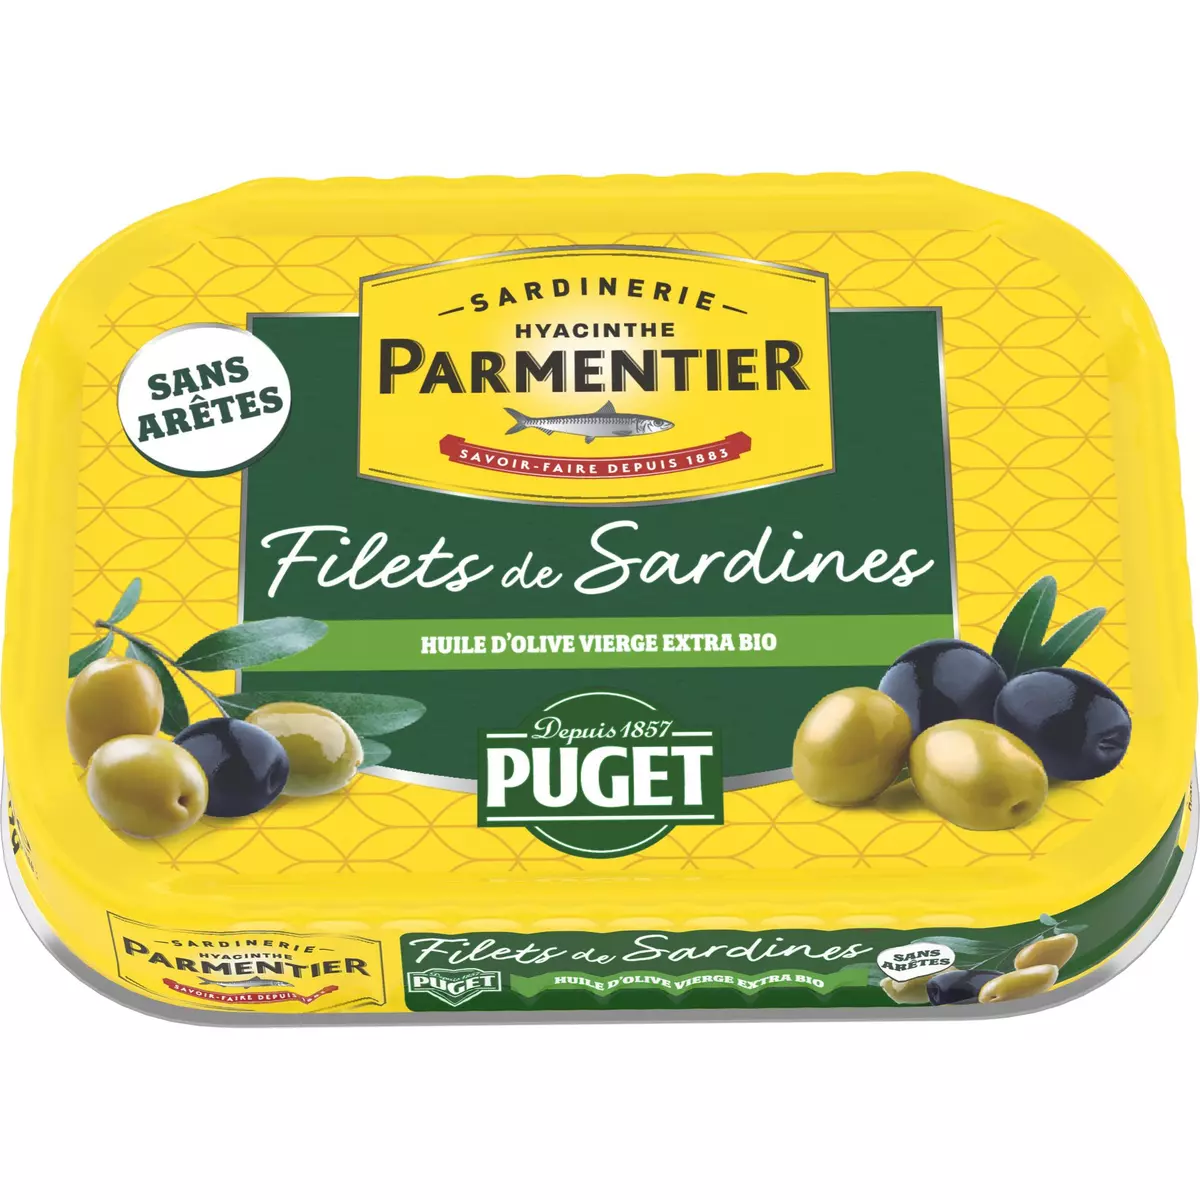 PARMENTIER Filets de sardines à l'huile d'olive vierge extra Puget 70g